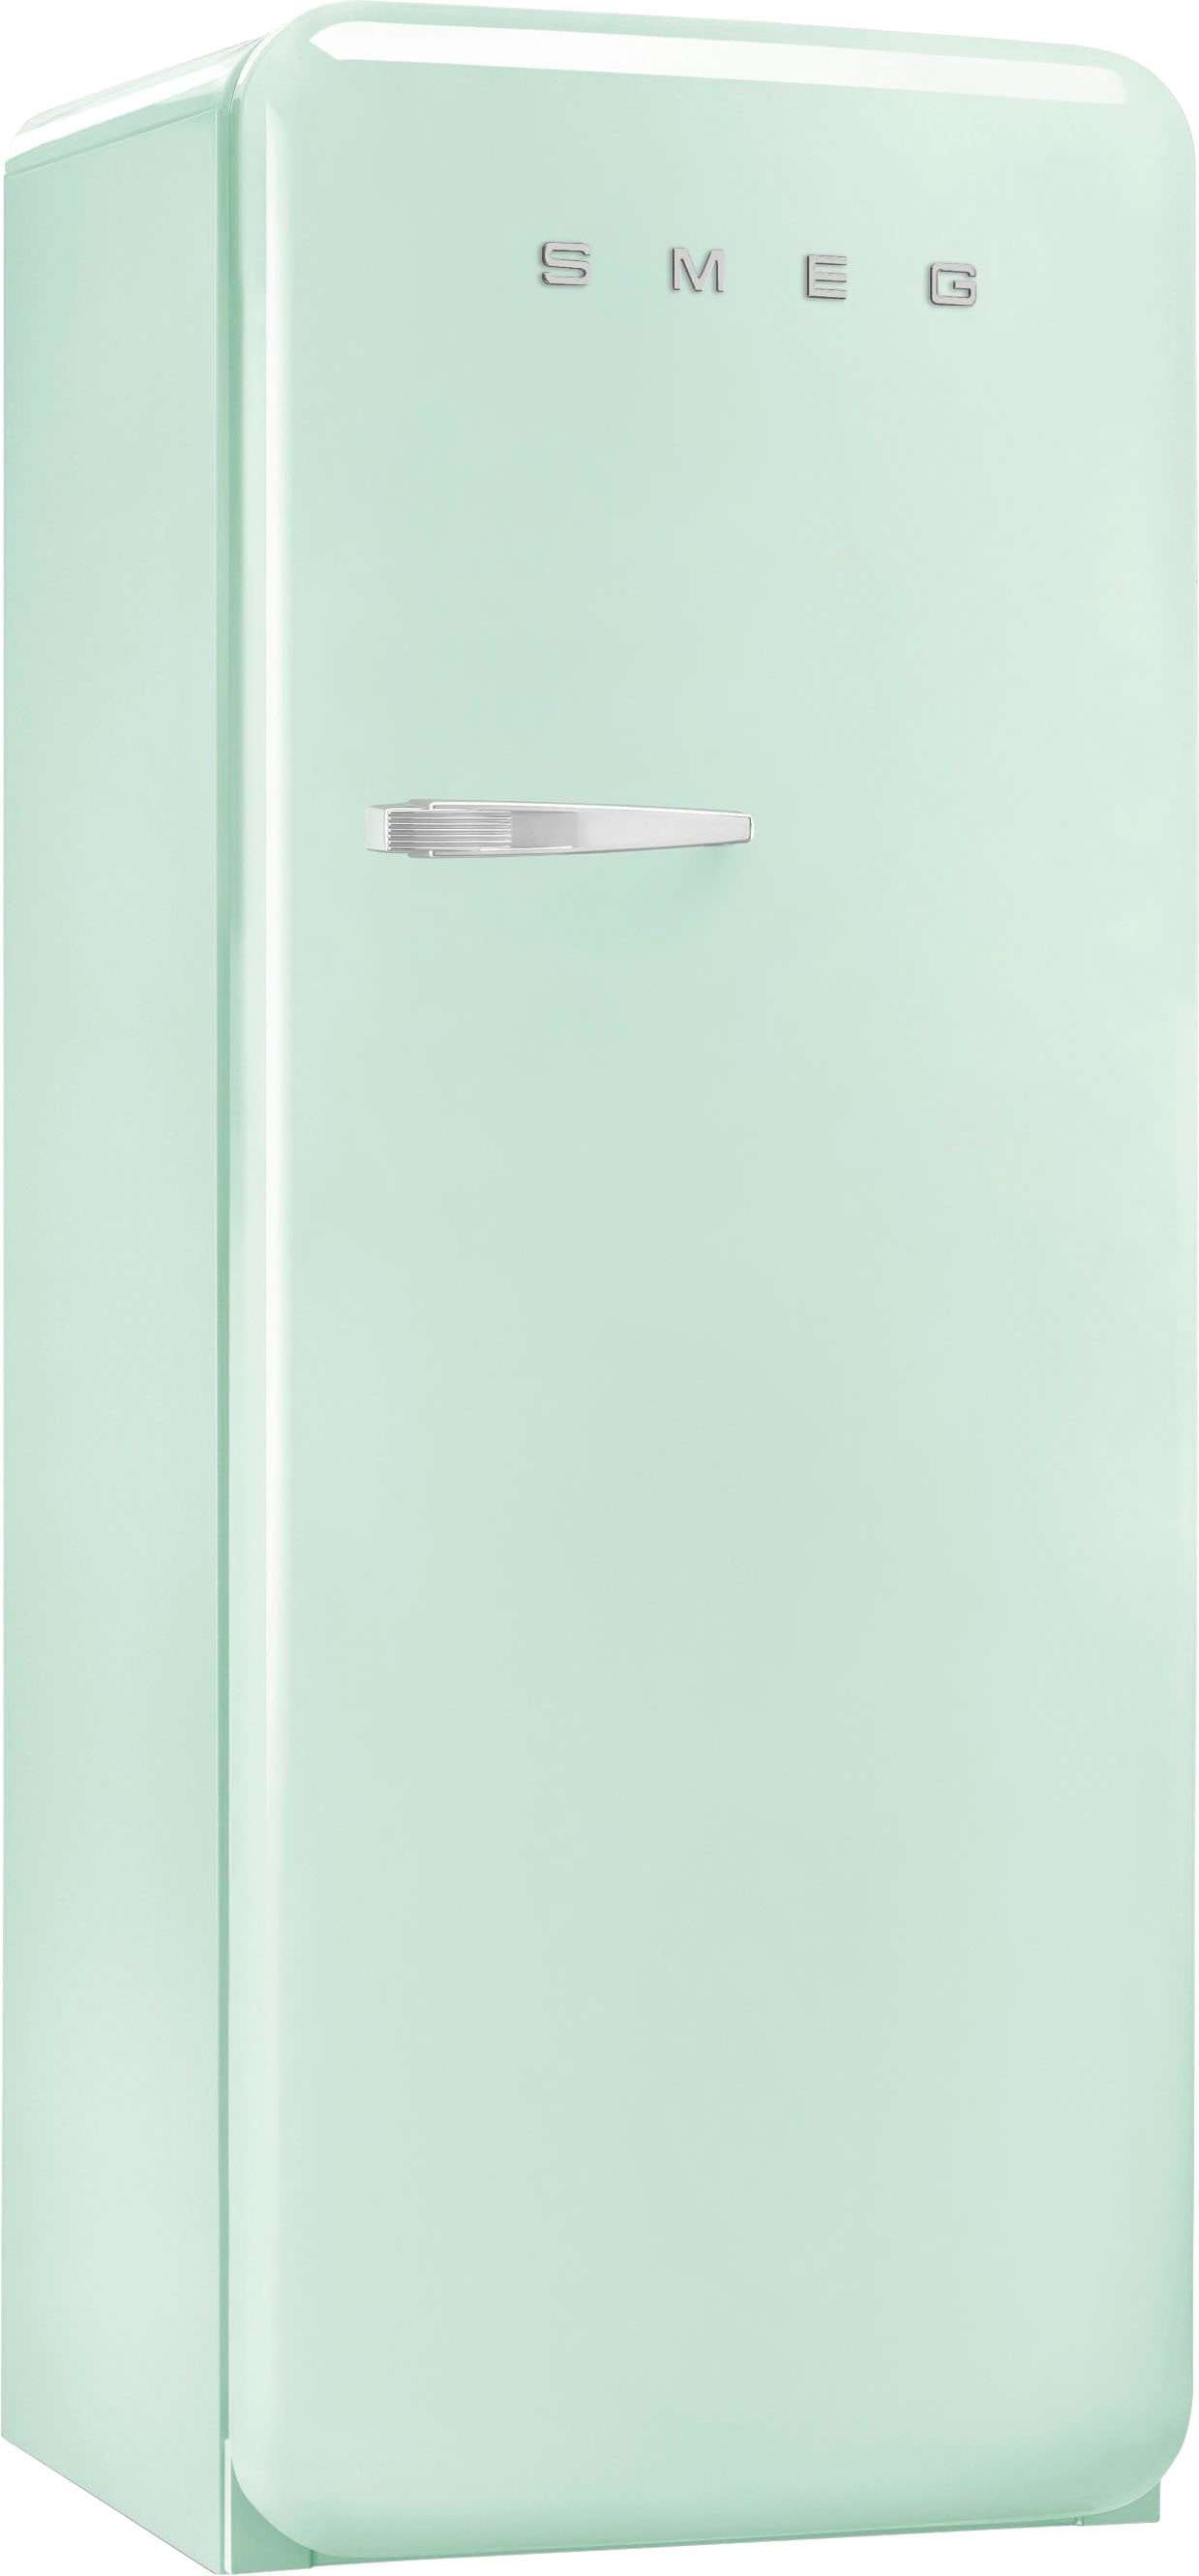 Smeg Kühlschrank »FAB28_5«, FAB28RPG5, 150 cm hoch, 60 cm breit